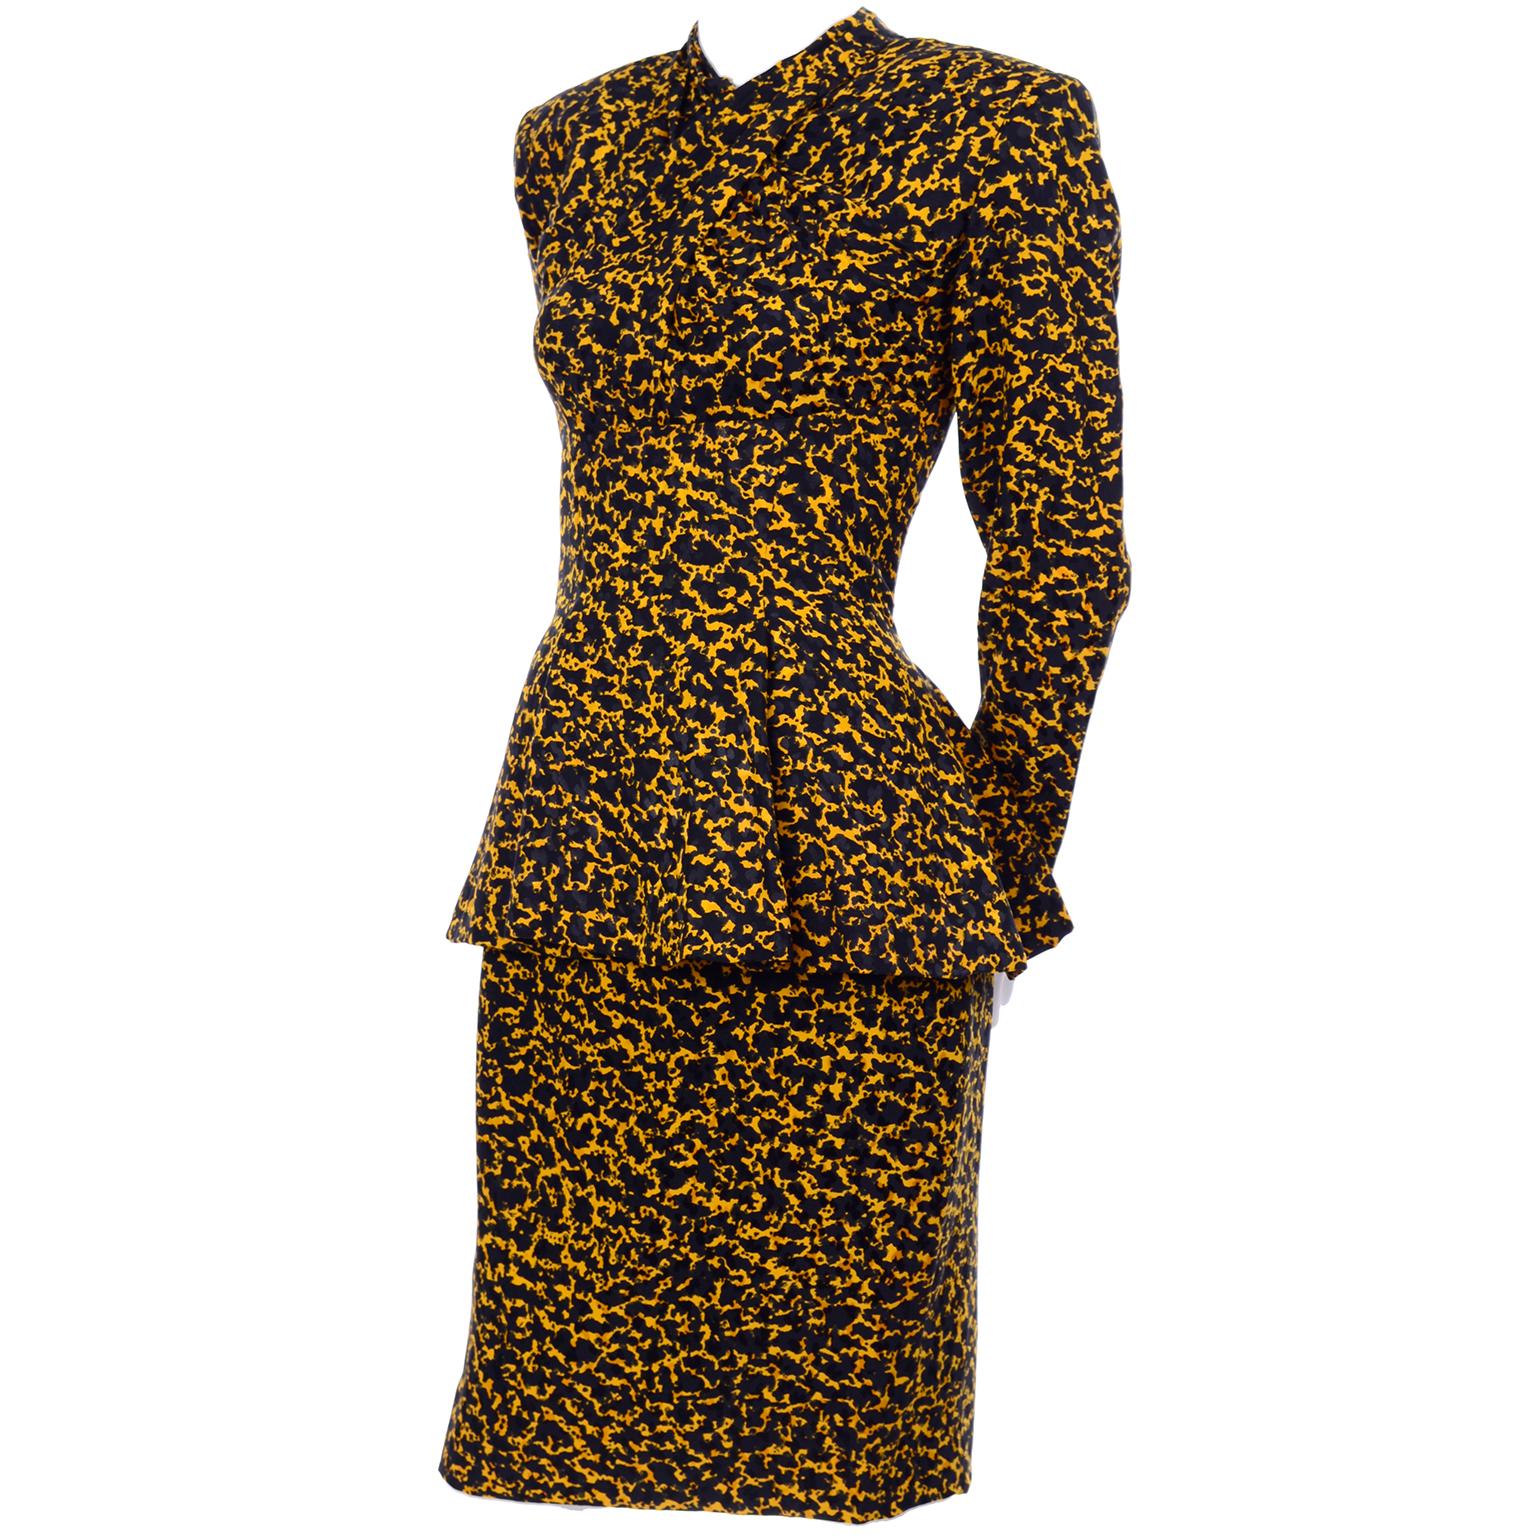 Dies ist ein Vintage Vicky Tiel Couture Seide Rock Anzug ursprünglich bei Bergdorf Goodman in den 1980er Jahren gekauft. Dieser schöne Anzug sieht beim Tragen wie ein Kleid aus. Das Kleid ist aus 100% Seide mit einem schwarz-gelben, abstrakten